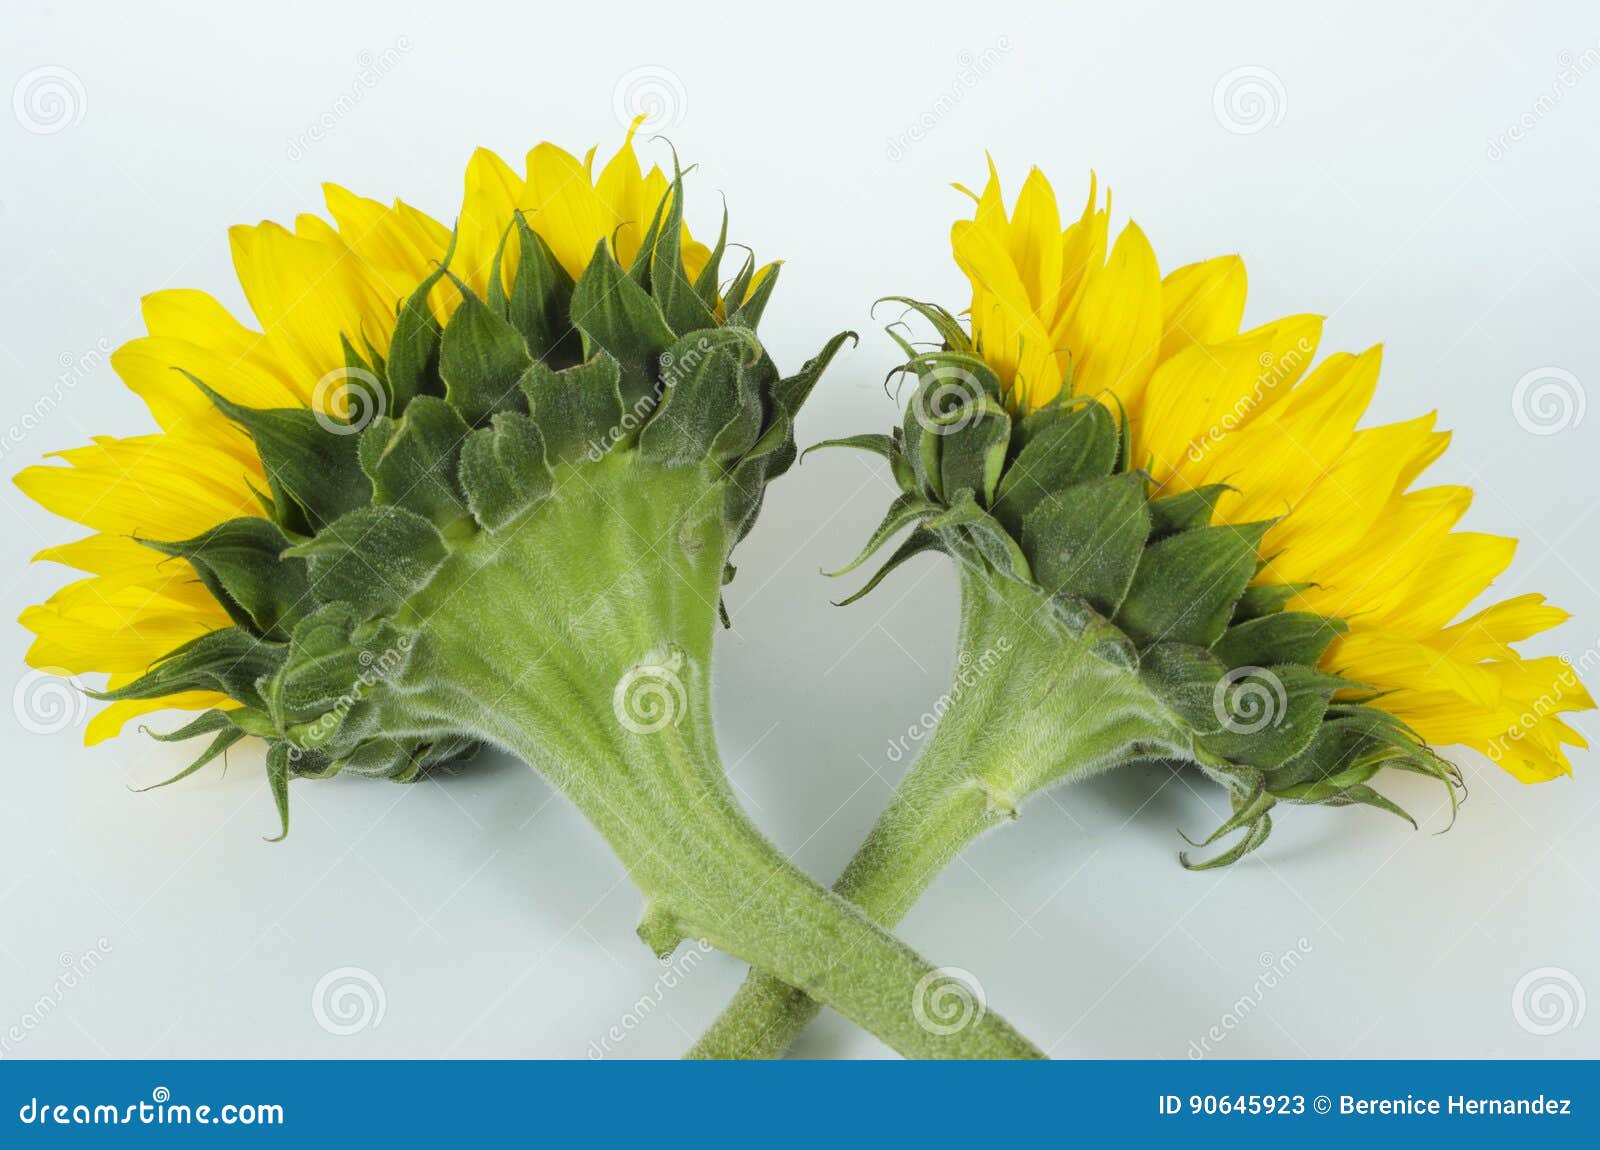 sunflowers-girasoles